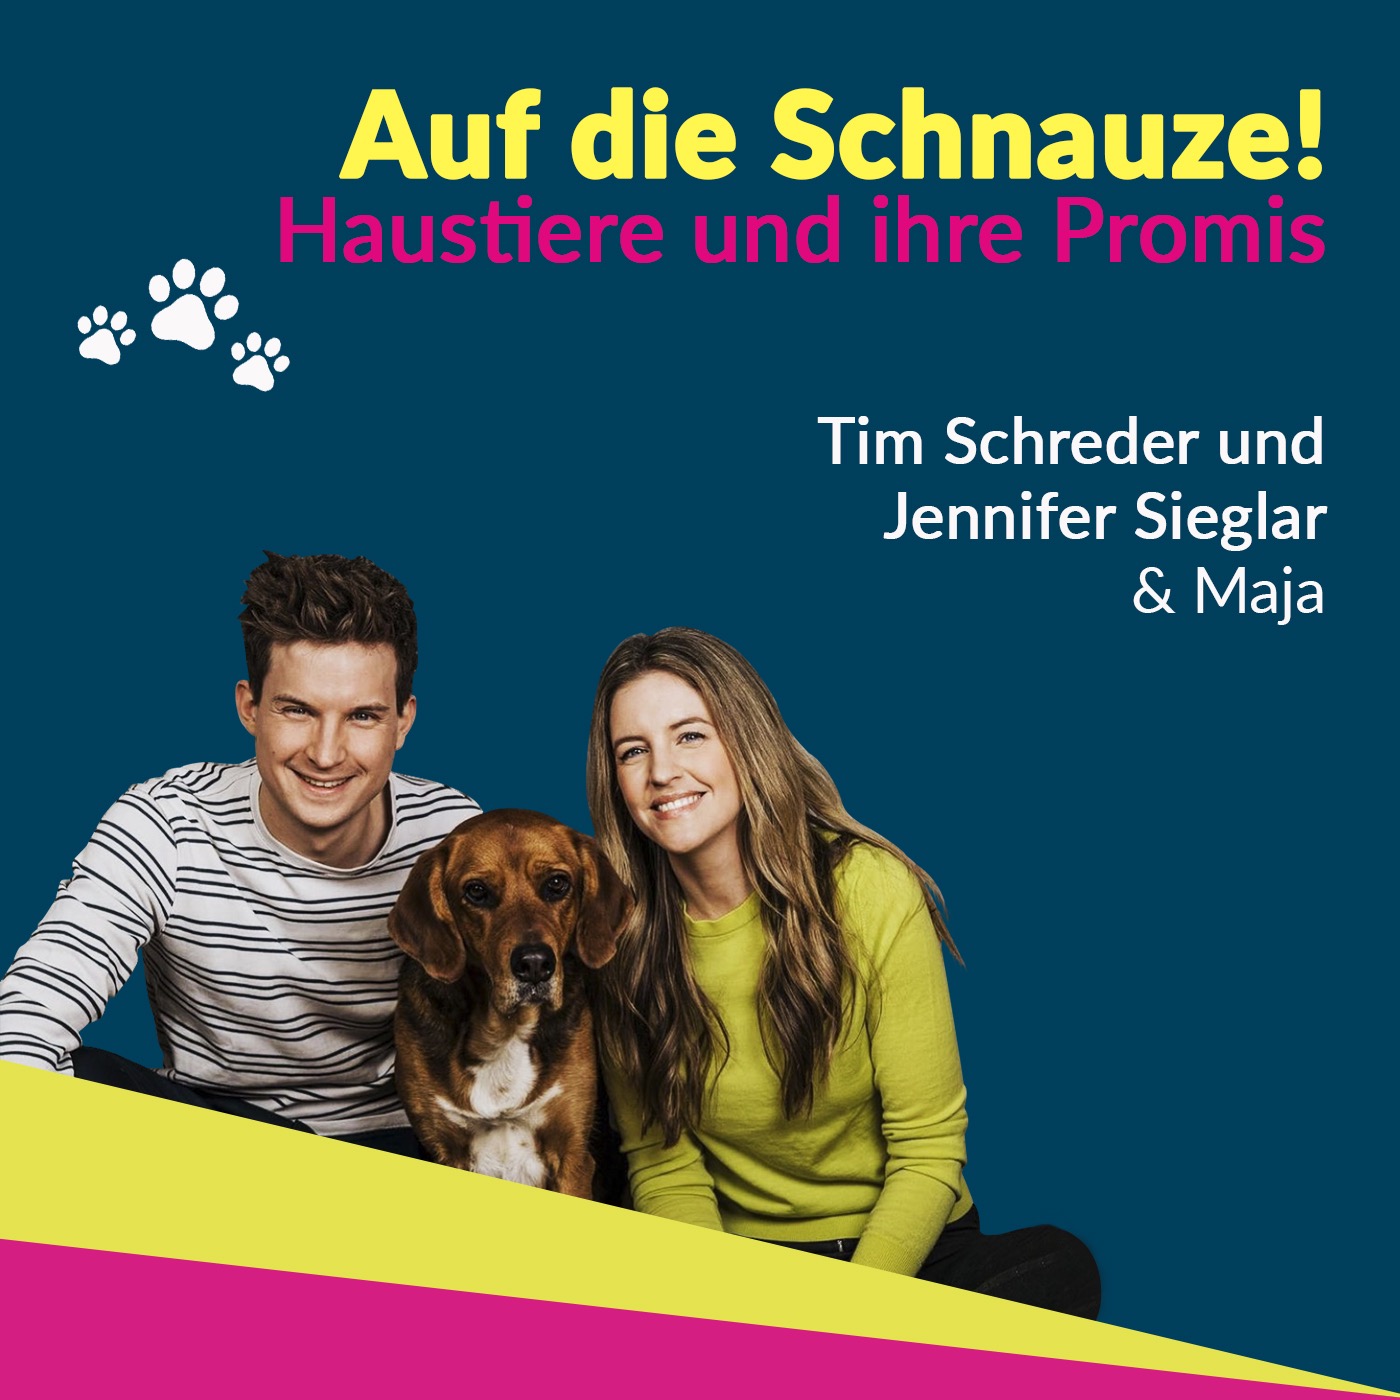 Jennifer Sieglar und Tim Schreder - ein Paar mit Hund!